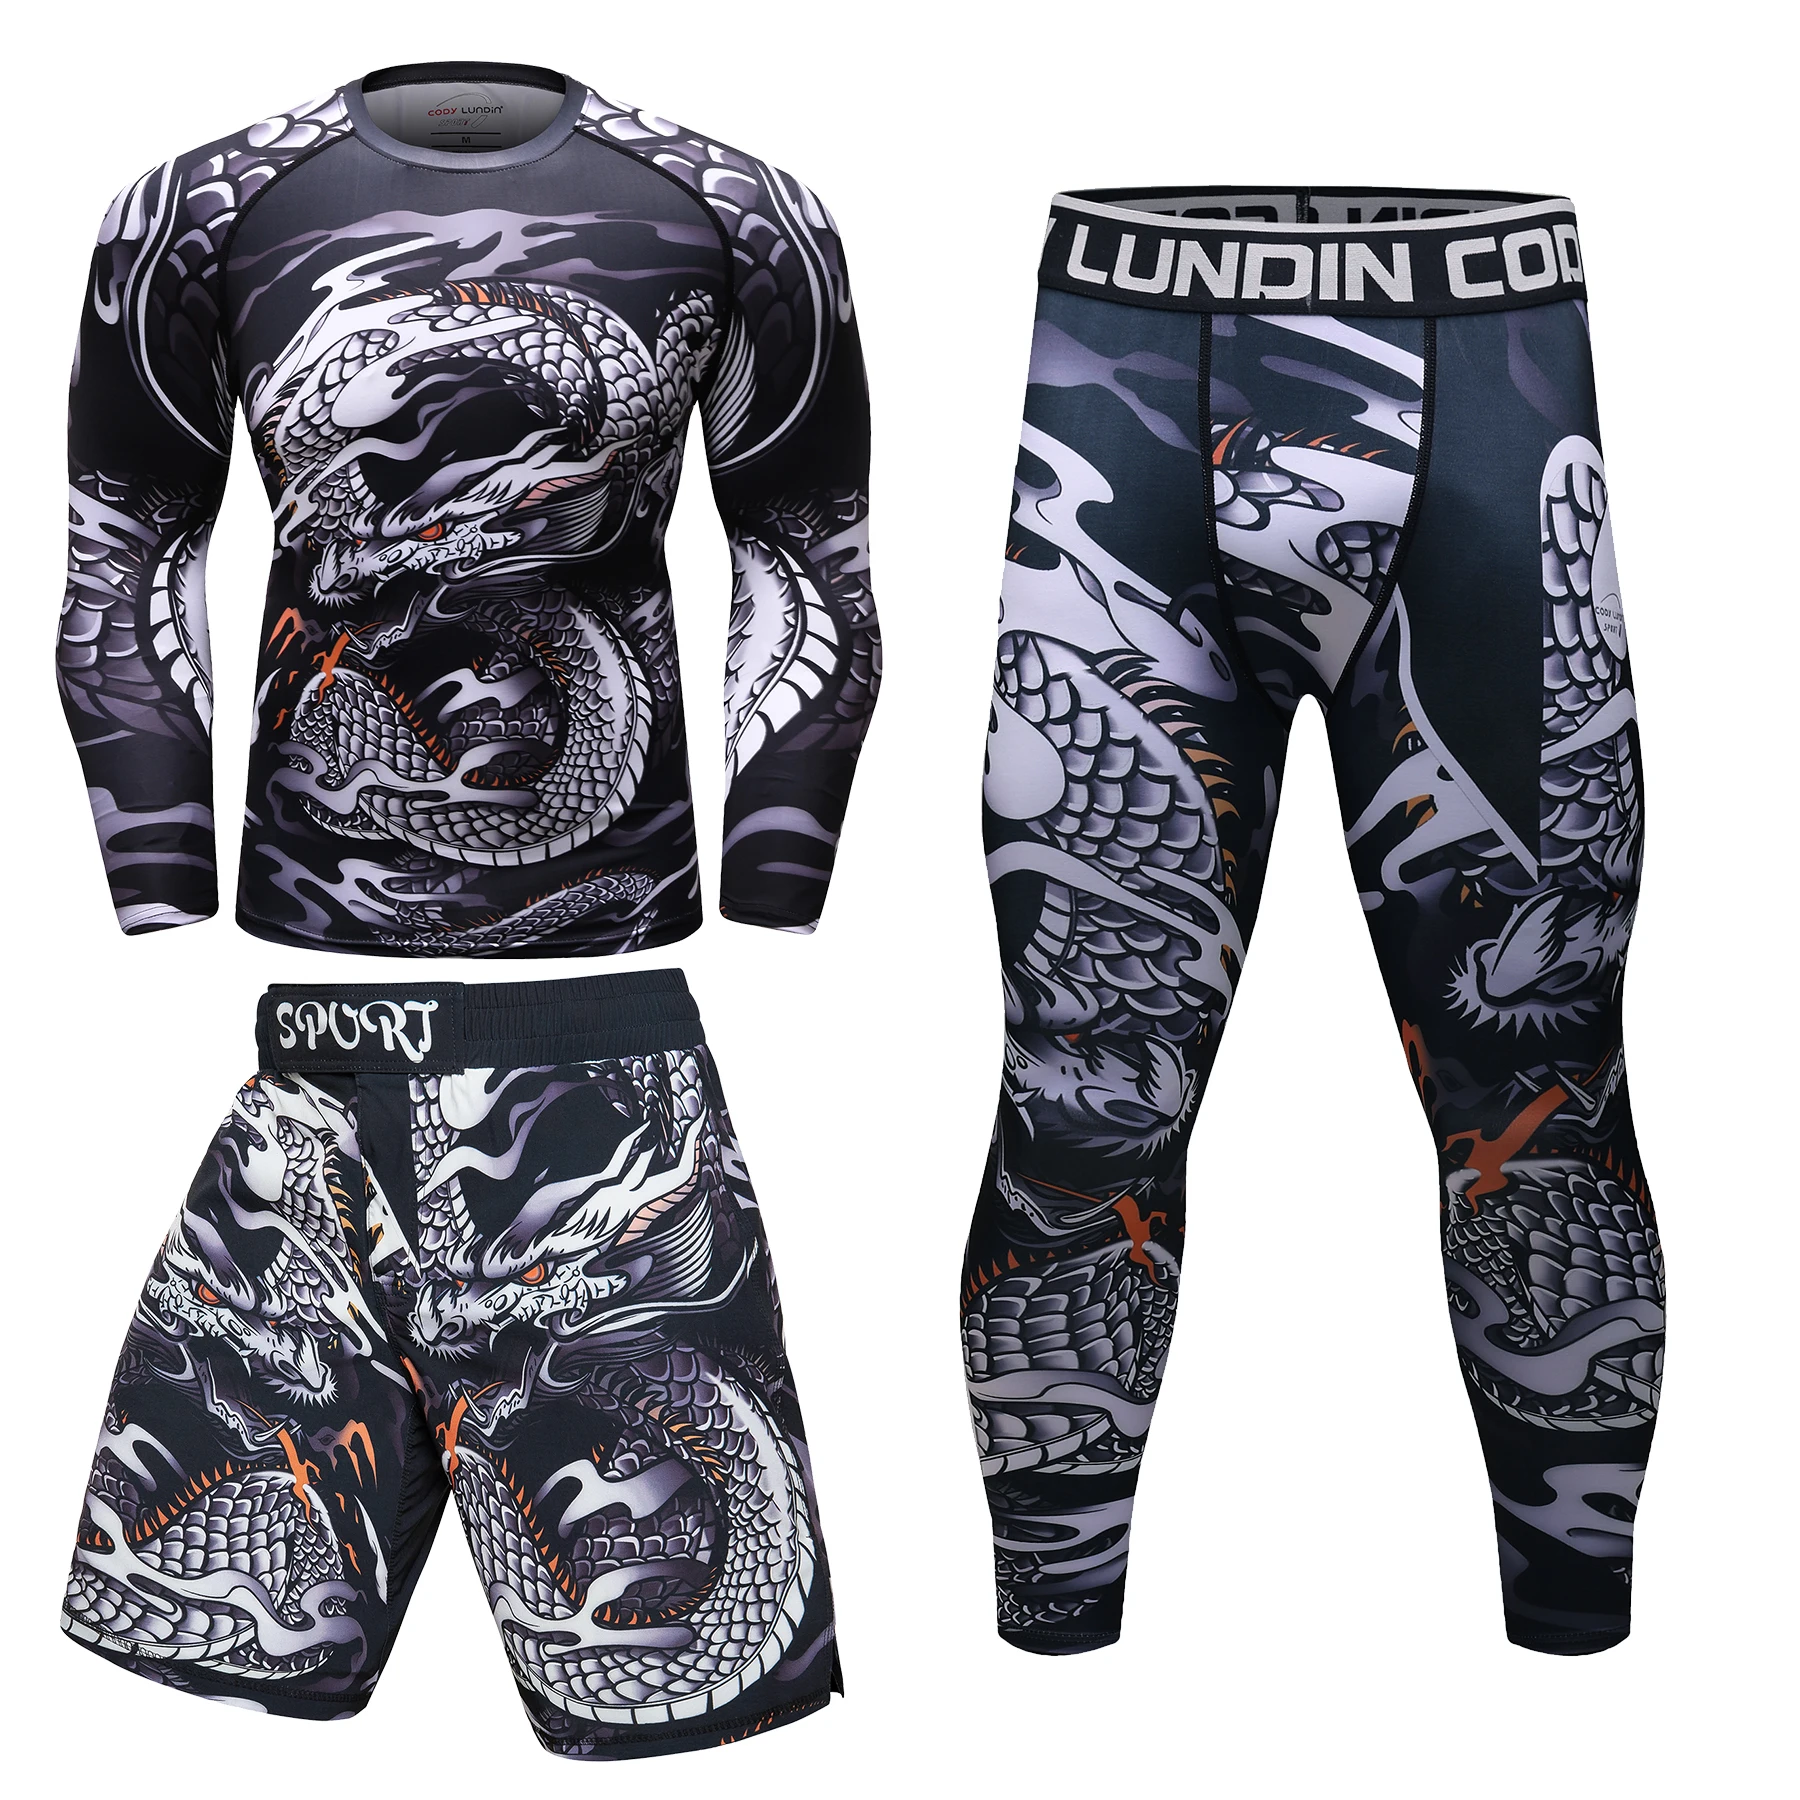 

Cody Lundin 3 в 1 мужской спортивный набор с принтом животного принт джиу джитсу gi набор Рашгард MMA шорты мужская тренировочная одежда для фитнеса